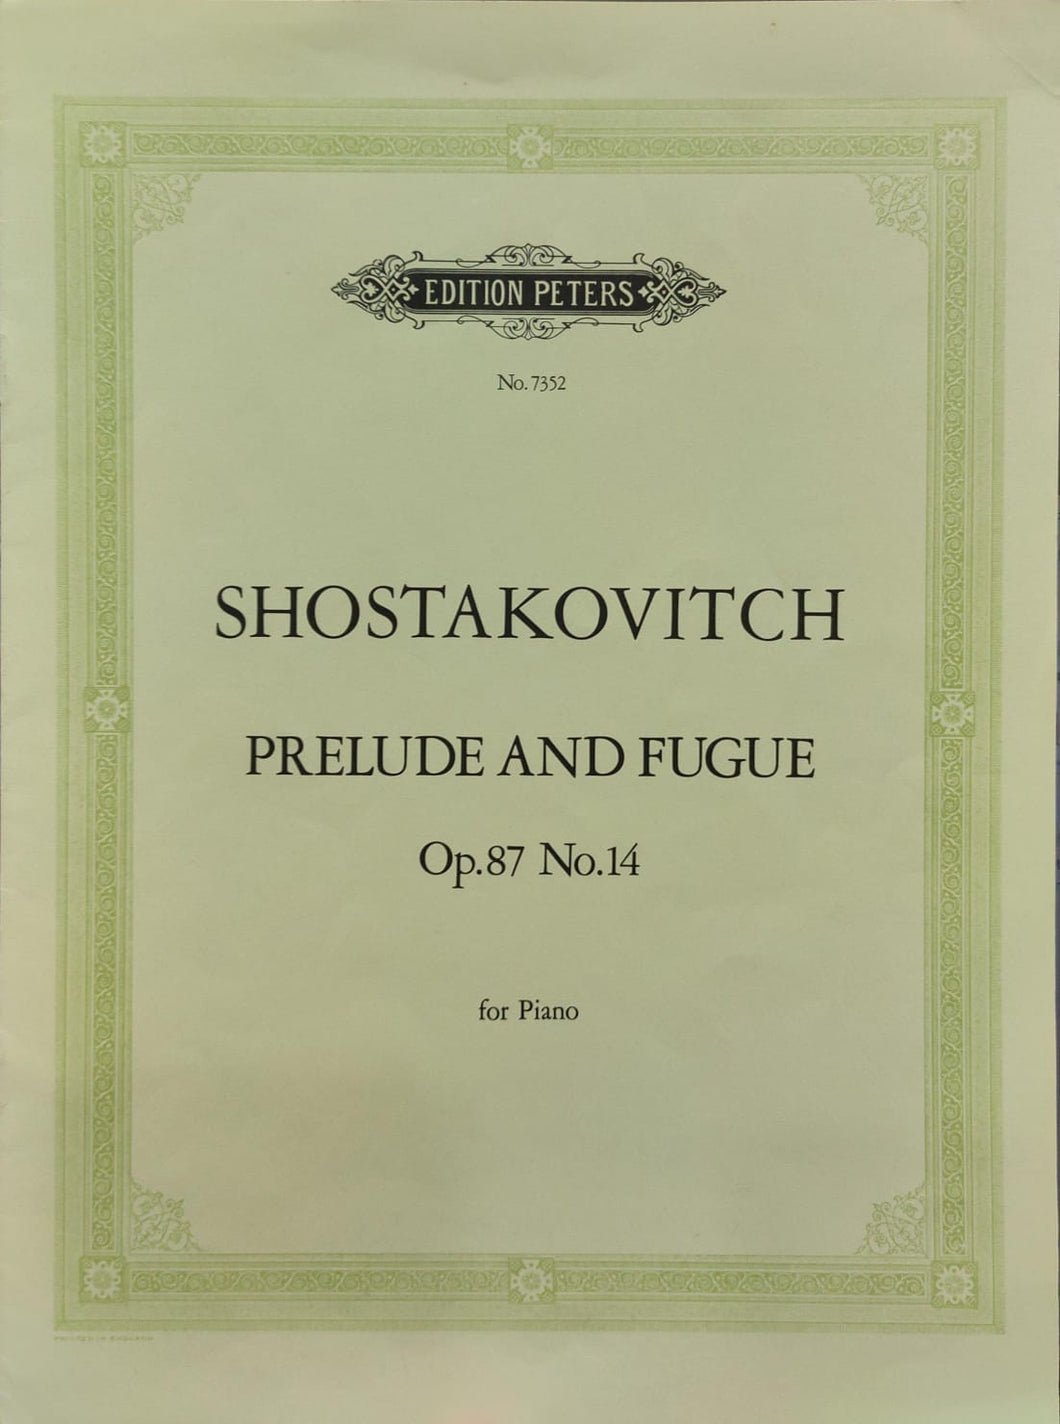 Shostakovich: Prelude and Fugue Op. 87 No. 14